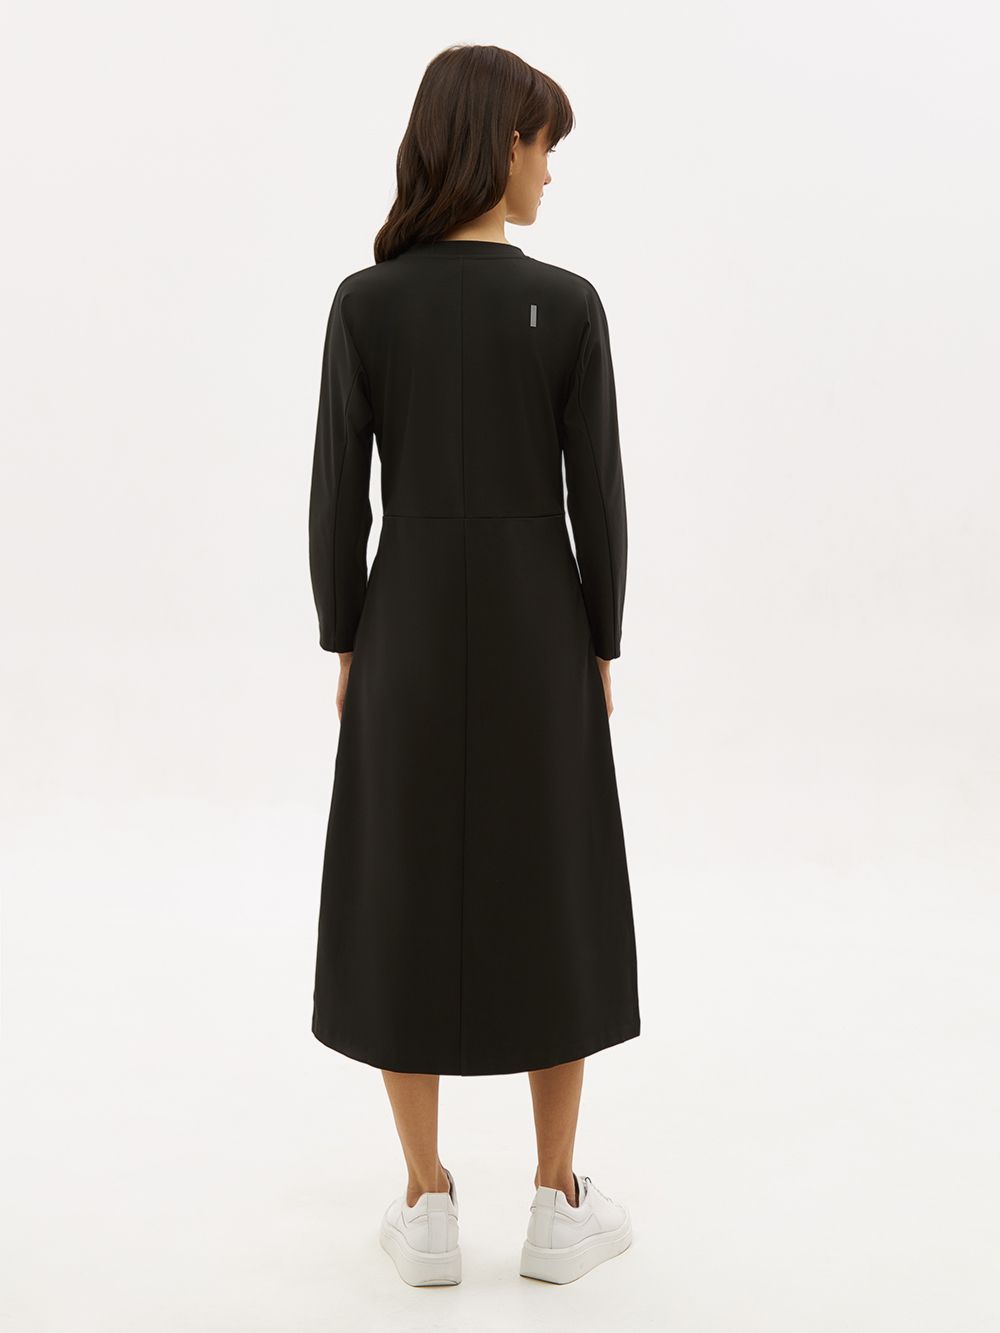 Трикотажное платье PAVO со светоотражающим брендингом. Изображение 3